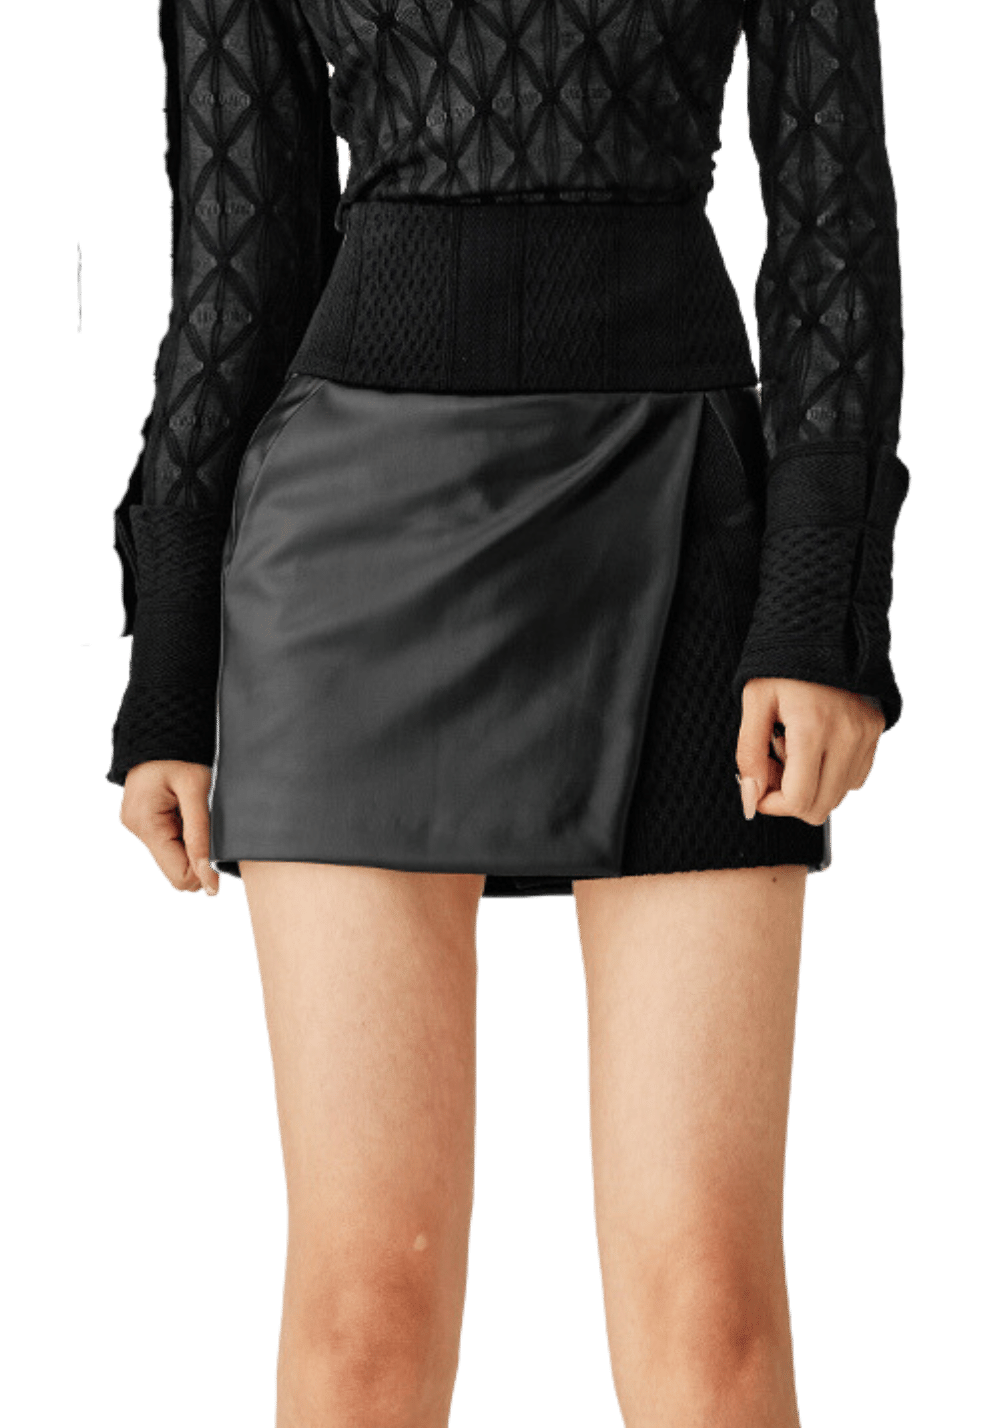 Knit Patchwork Bodycon Skirt - PSYLOS 1, Knit Patchwork Bodycon Skirt, Dress/Skirt, Necessary, PSYLOS 1